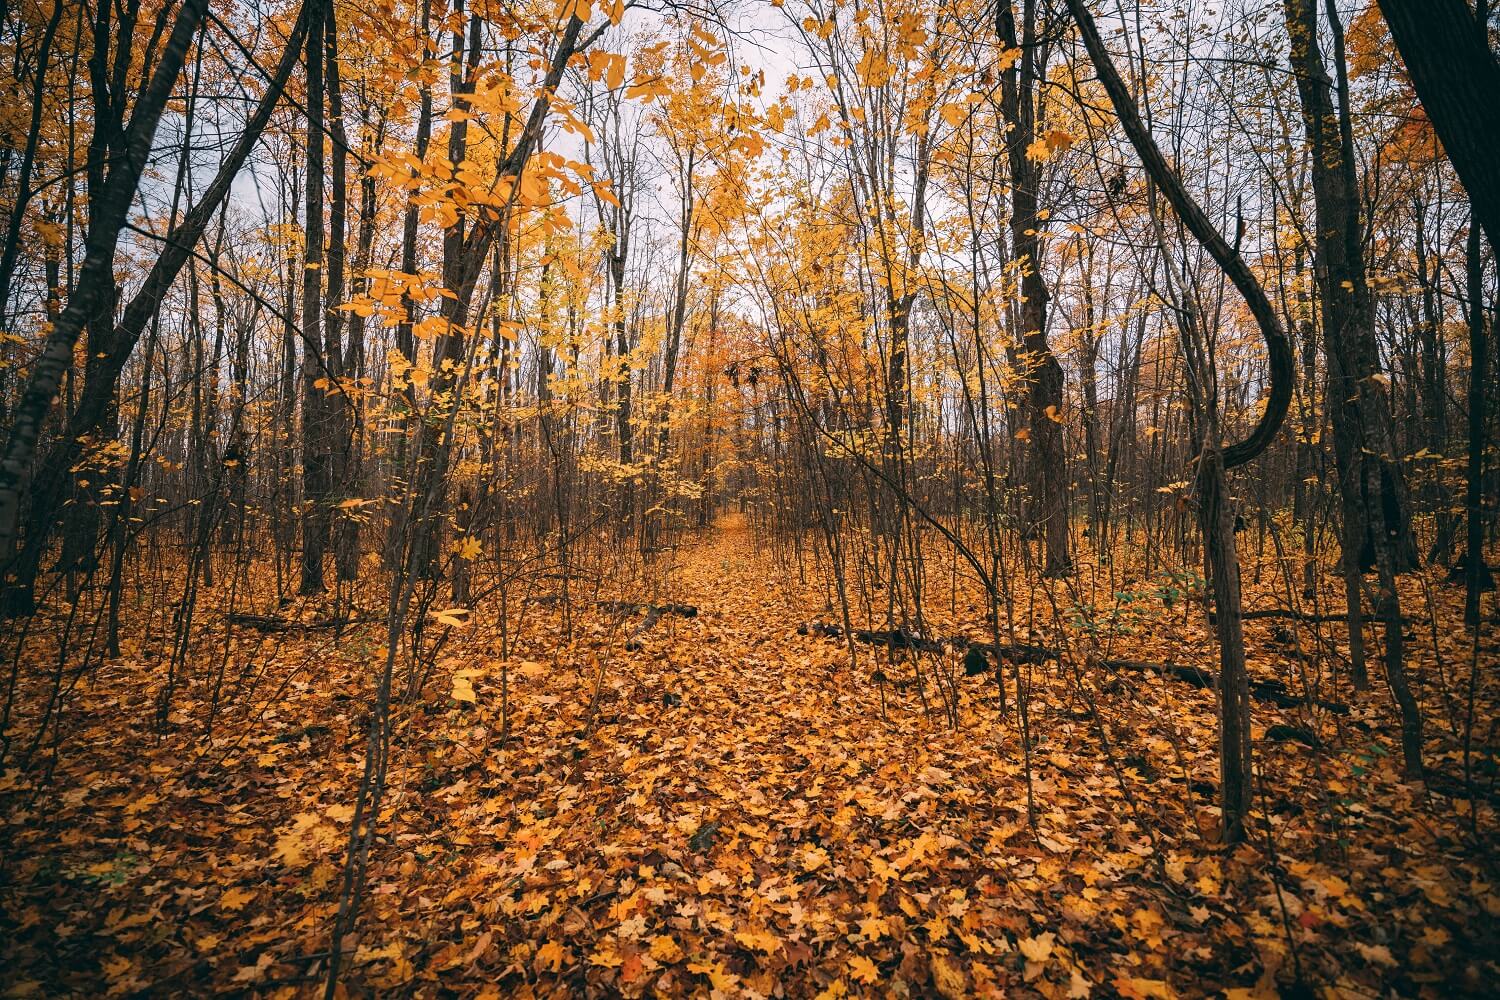 Golden Autumn Leaves Fall Backdground IBD-24304